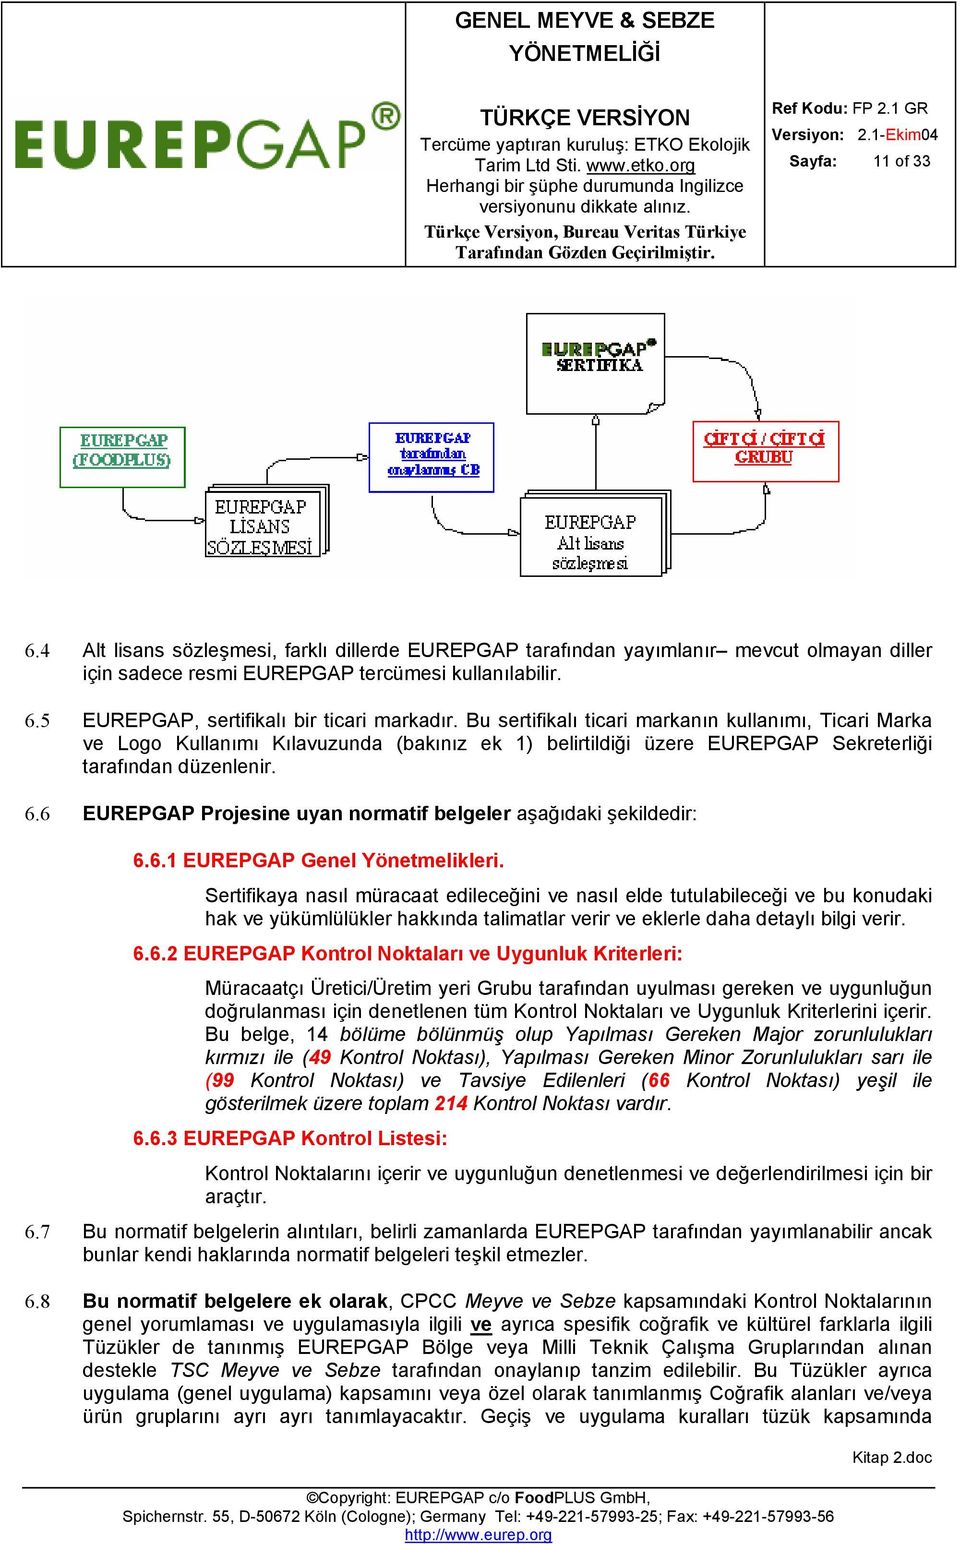 6 EUREPGAP Projesine uyan normatif belgeler aşağıdaki şekildedir: 6.6.1 EUREPGAP Genel Yönetmelikleri.